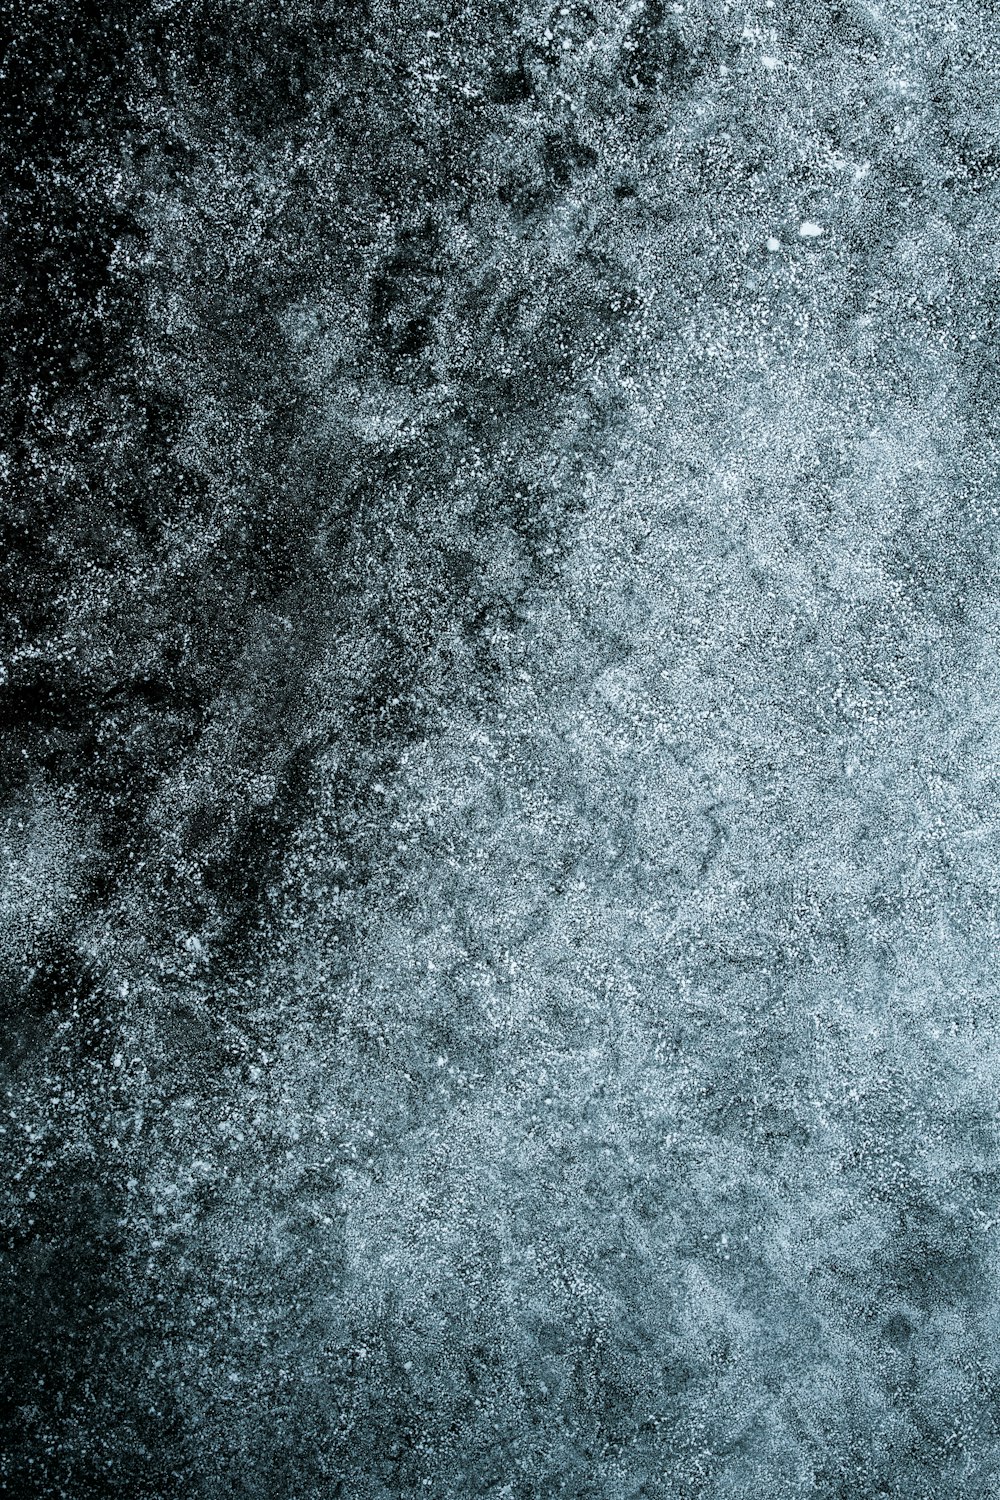 Une photo en noir et blanc de neige au sol